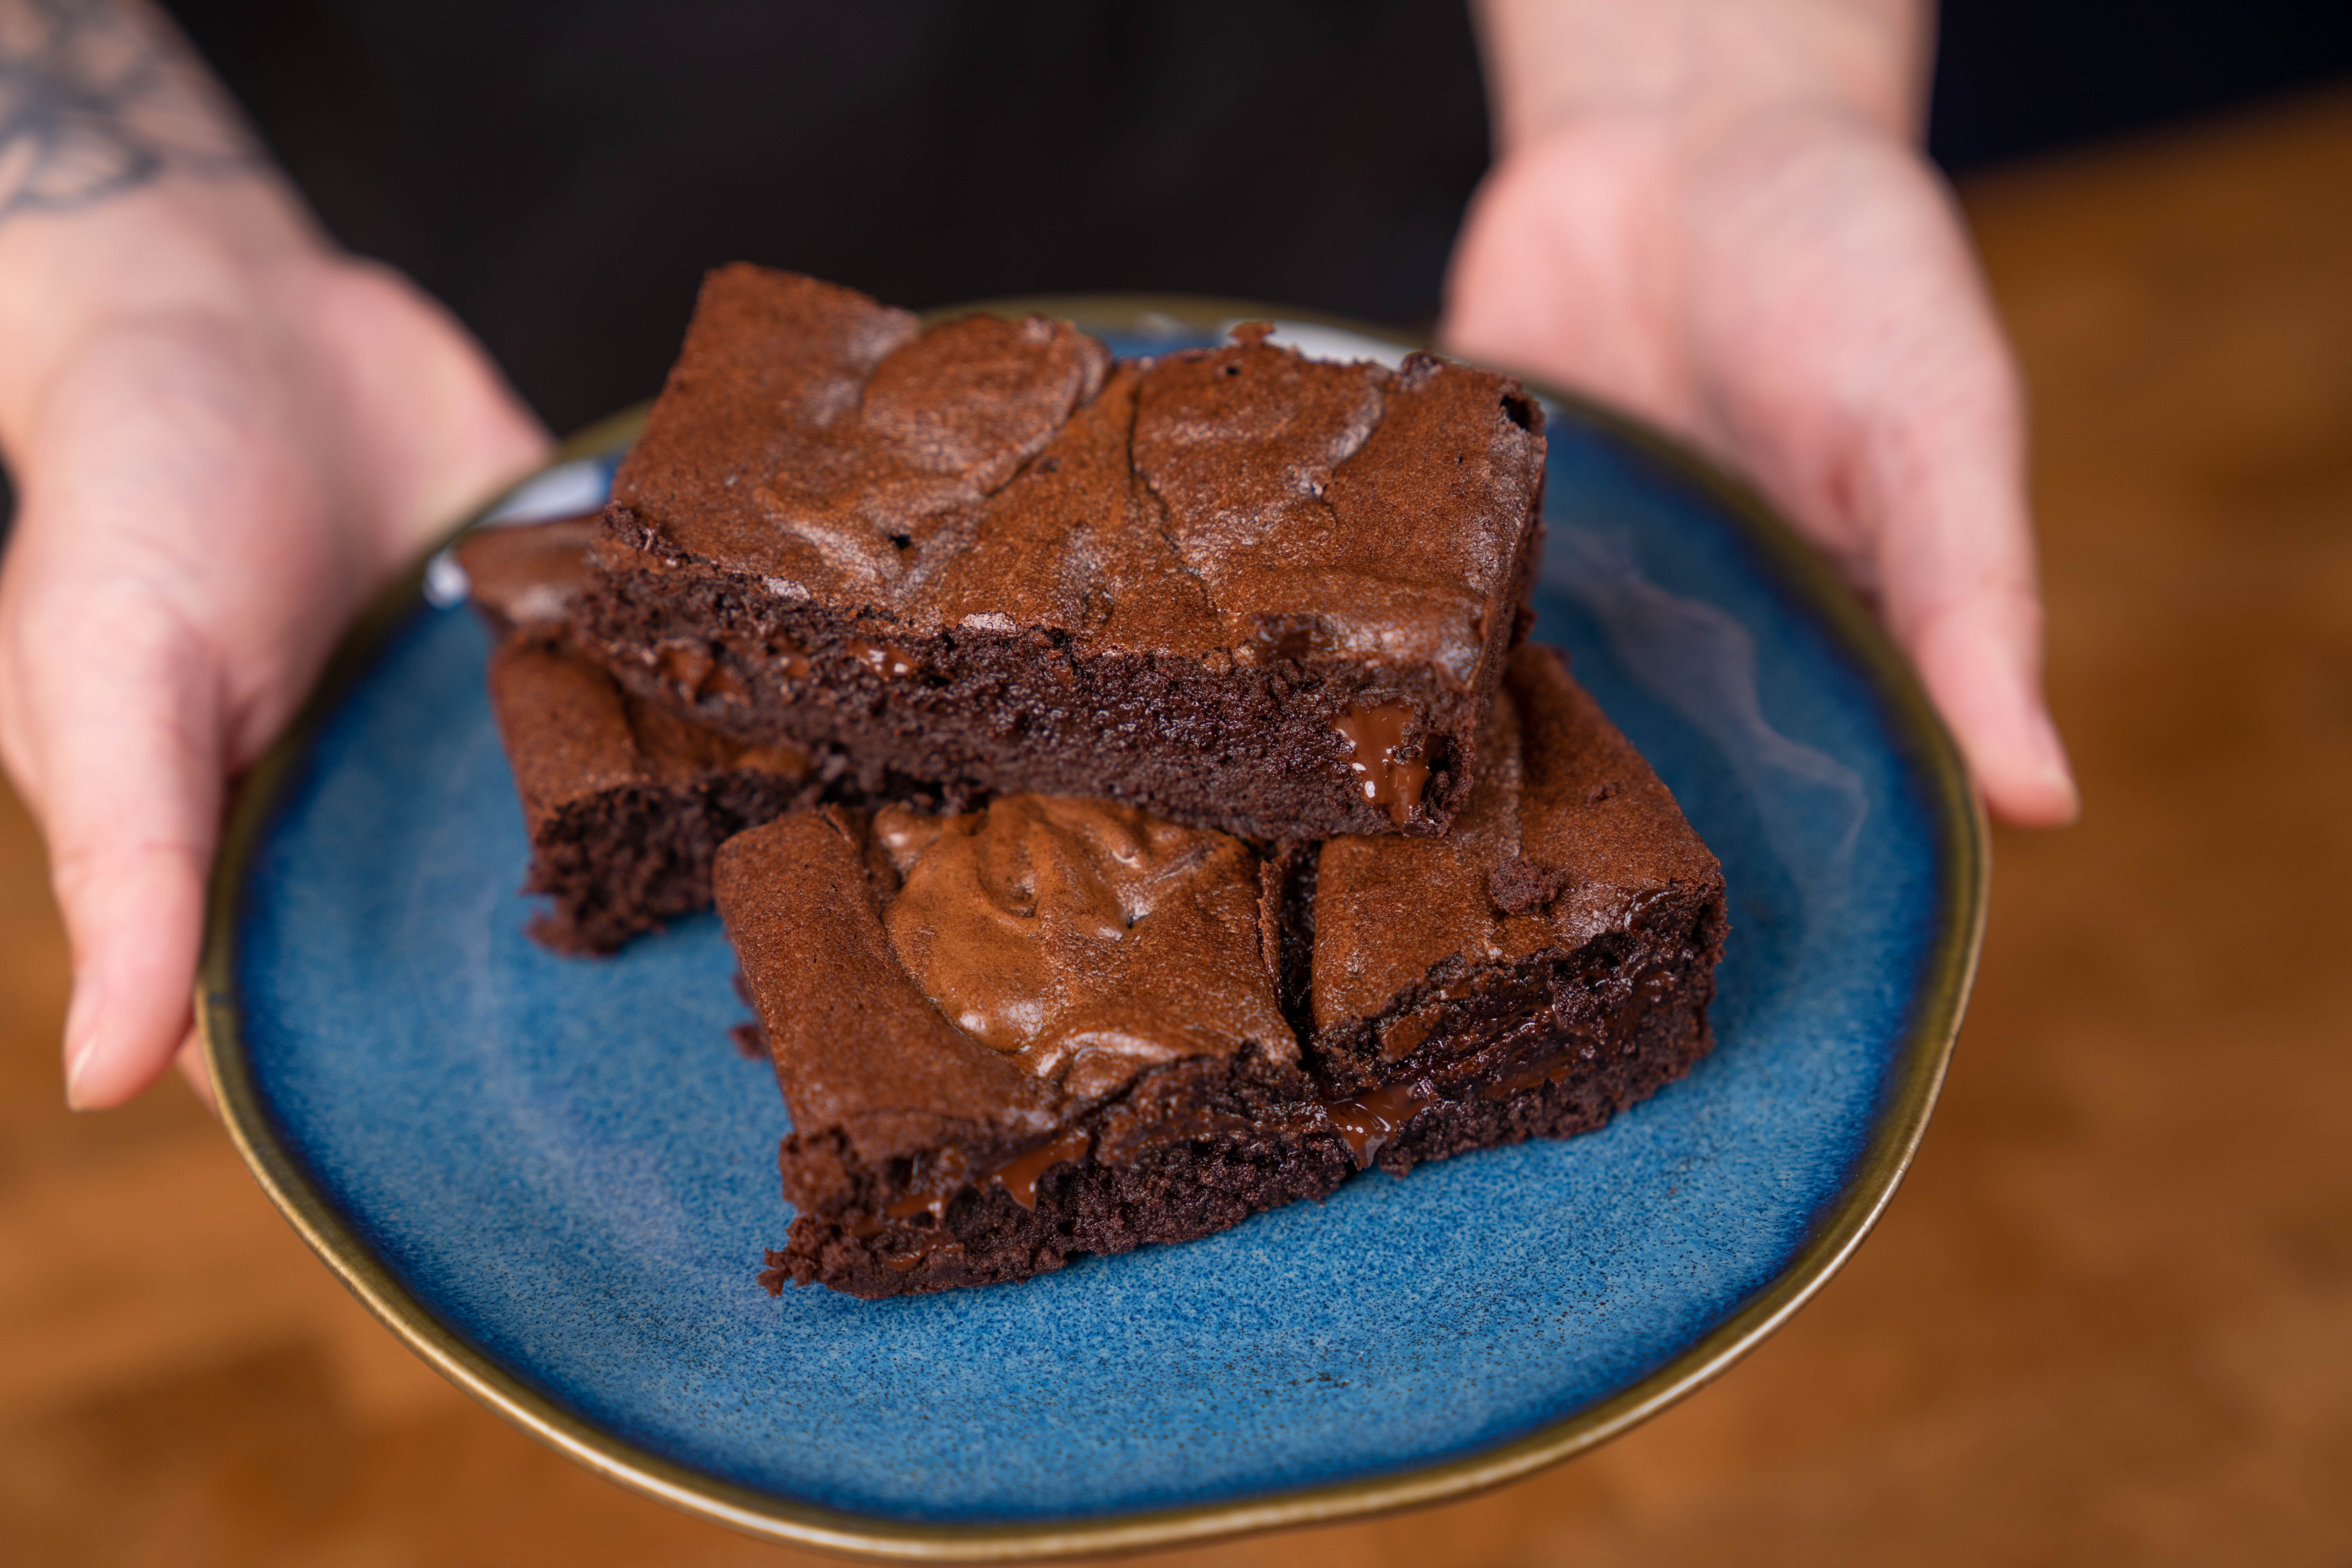 Alton Brown, Good Eats: Brownies